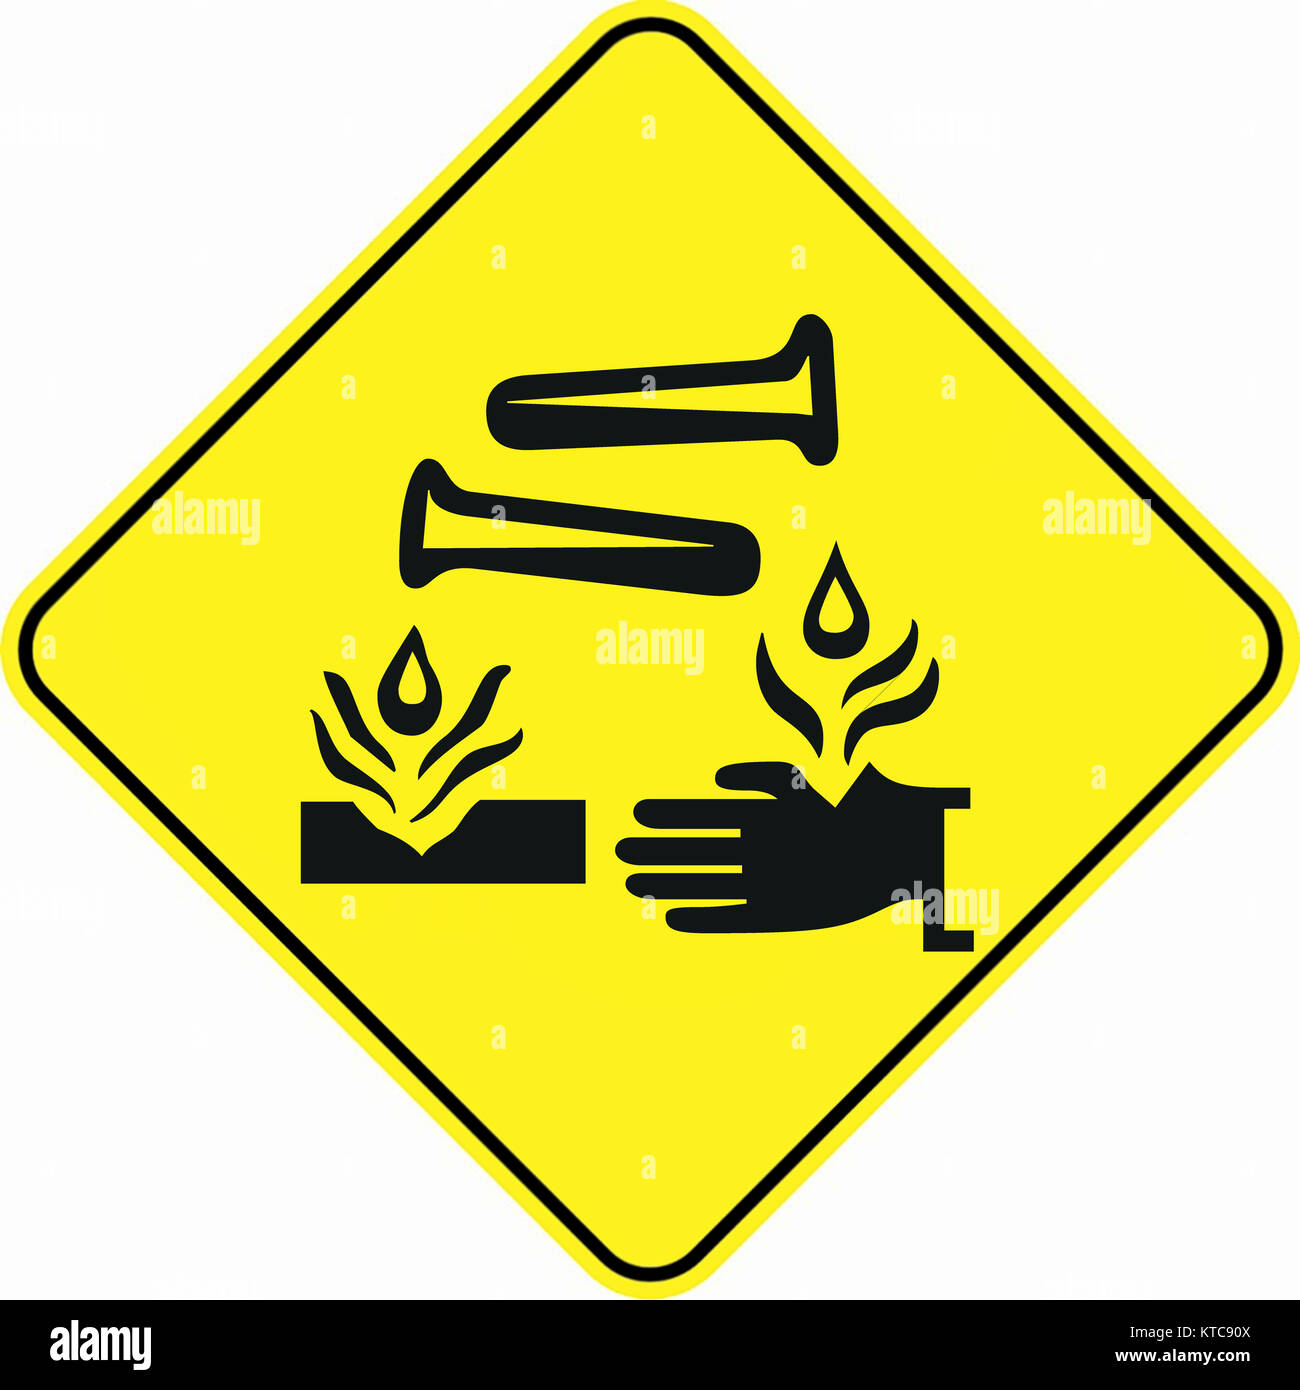 L'attention des substances corrosives, signe symbole d'alerte Banque D'Images